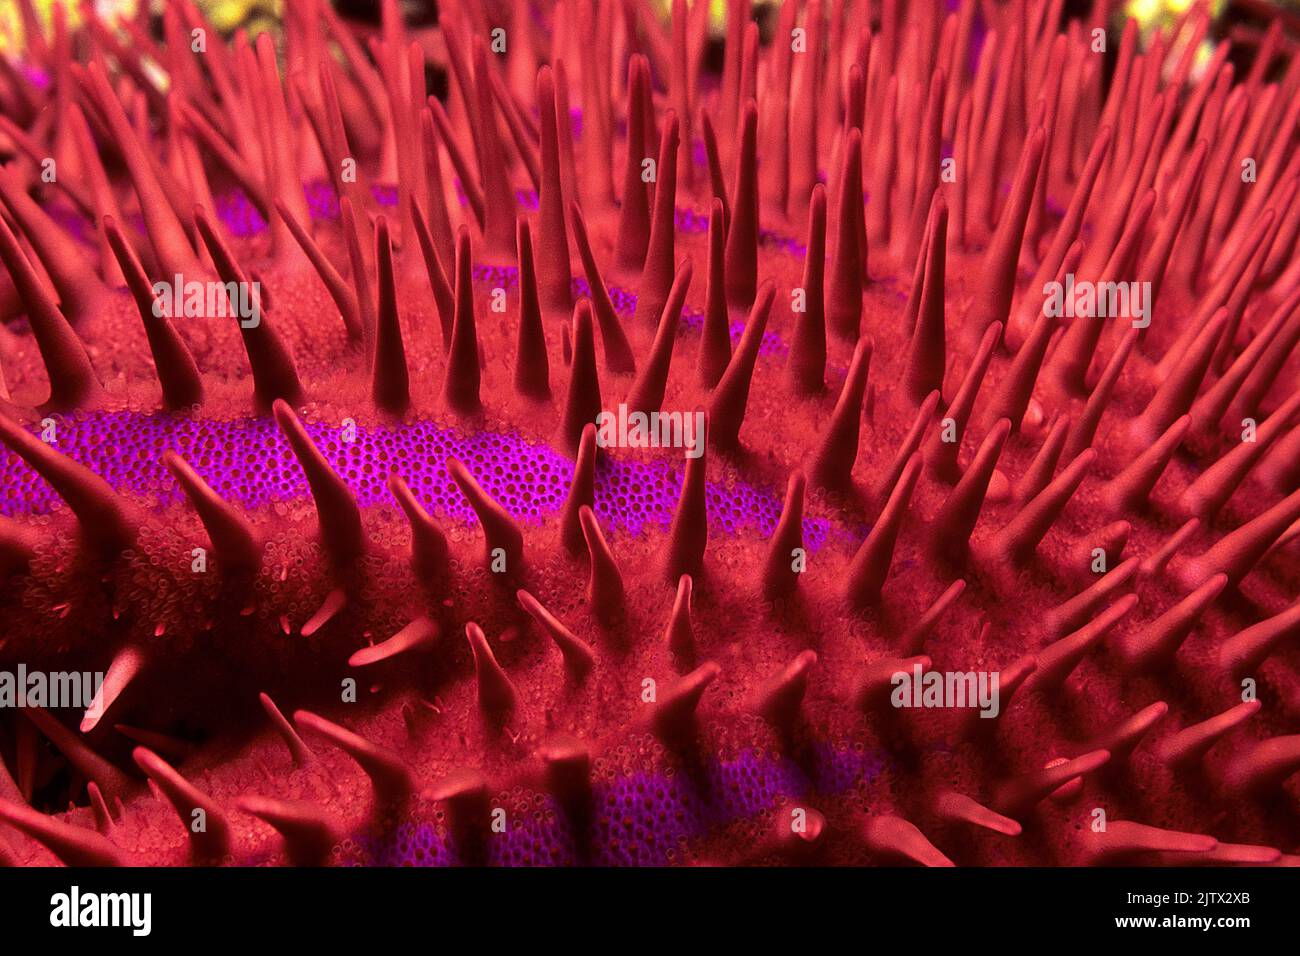 Spine di una corona di spine Starfish (Acanthaster planci), le stelle marine è un predatore della barriera corallina, coperto da spine molto affilate e velenose, Maldive Foto Stock